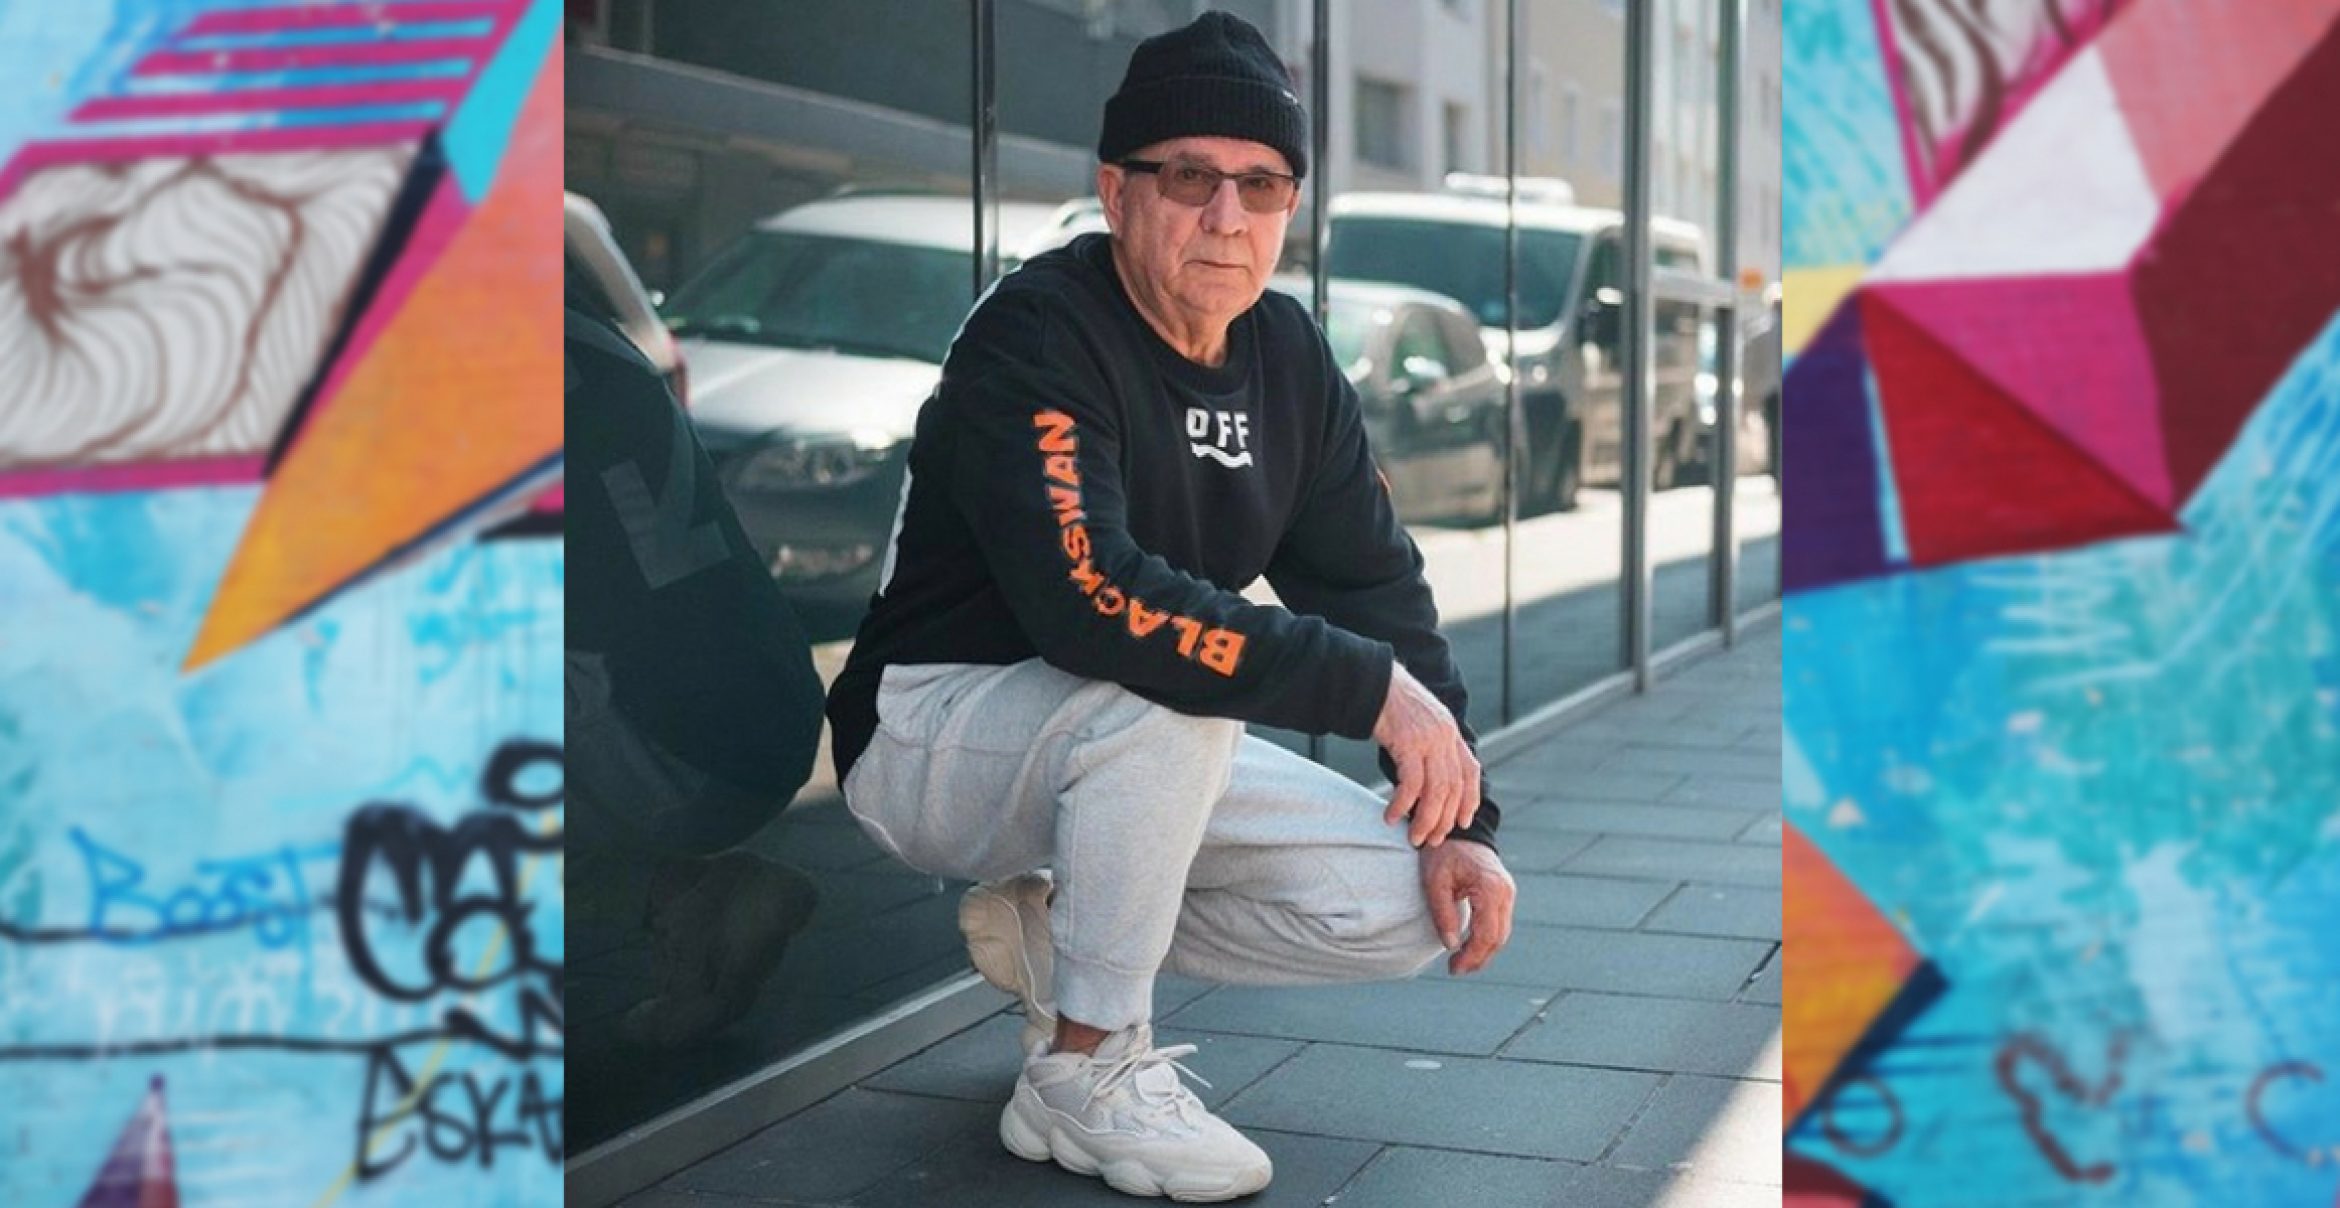 Dieser Rentner ist mit seinen Outfits der Hit auf Instagram